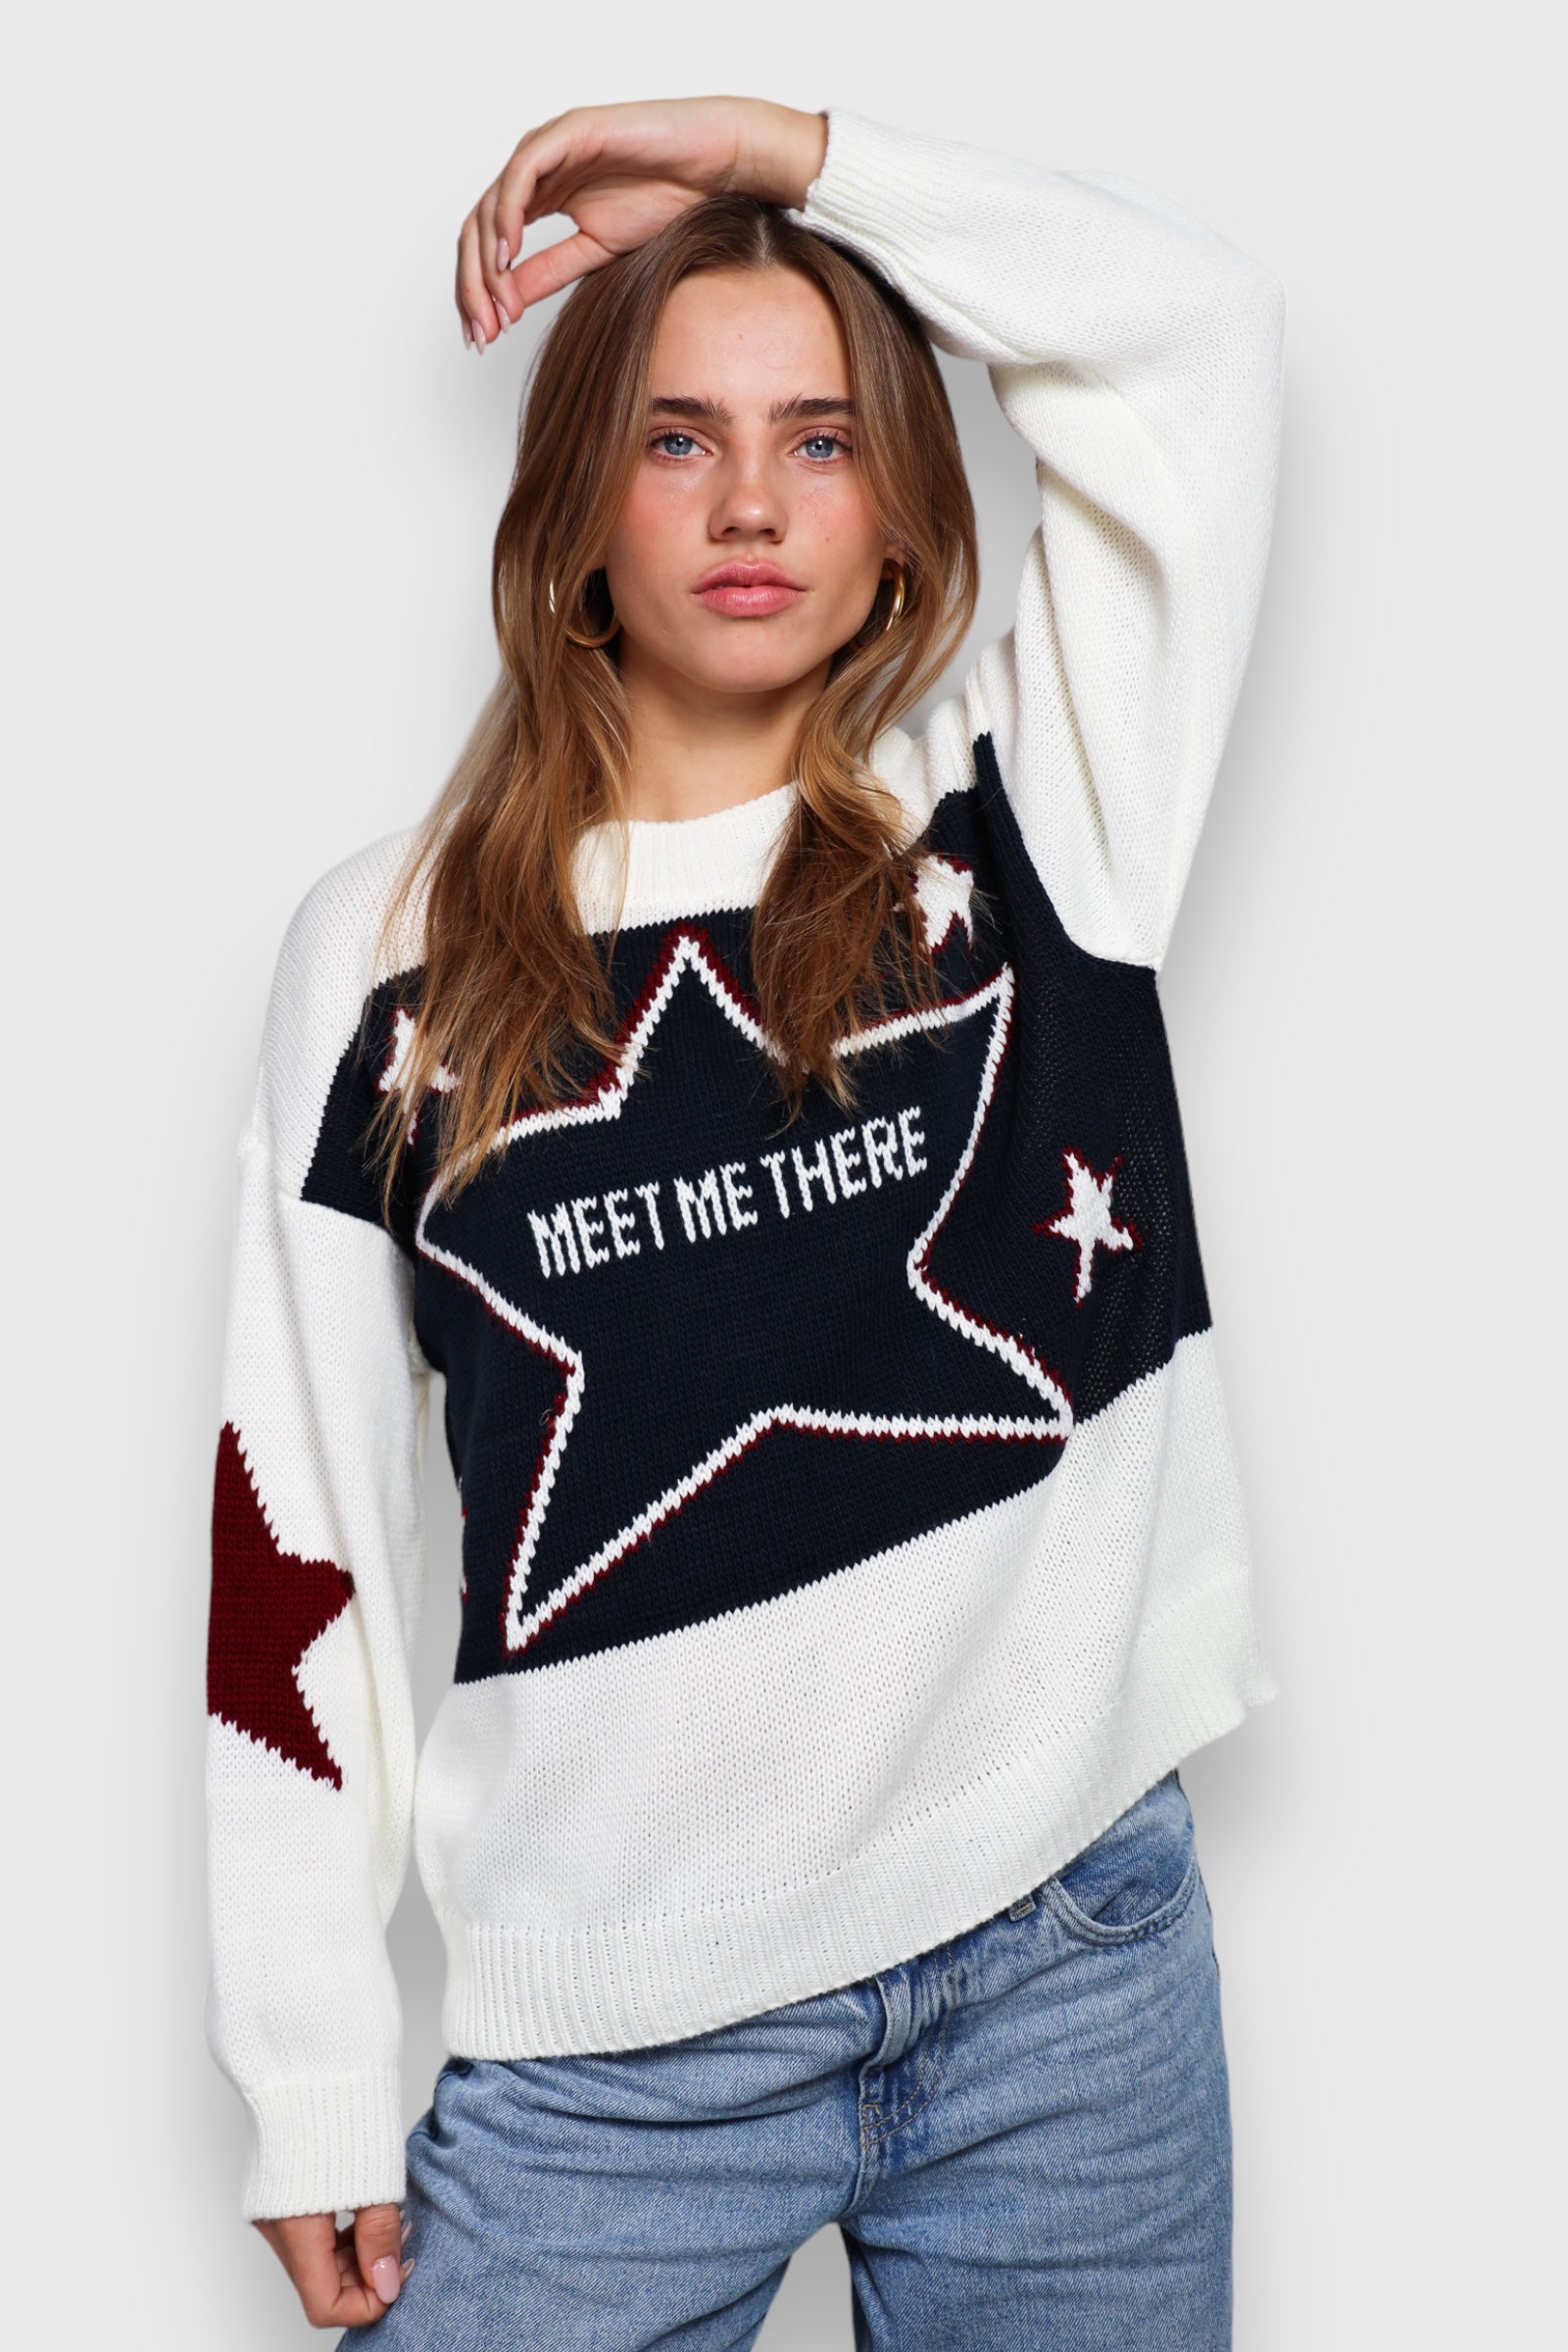 "MMT" sweater